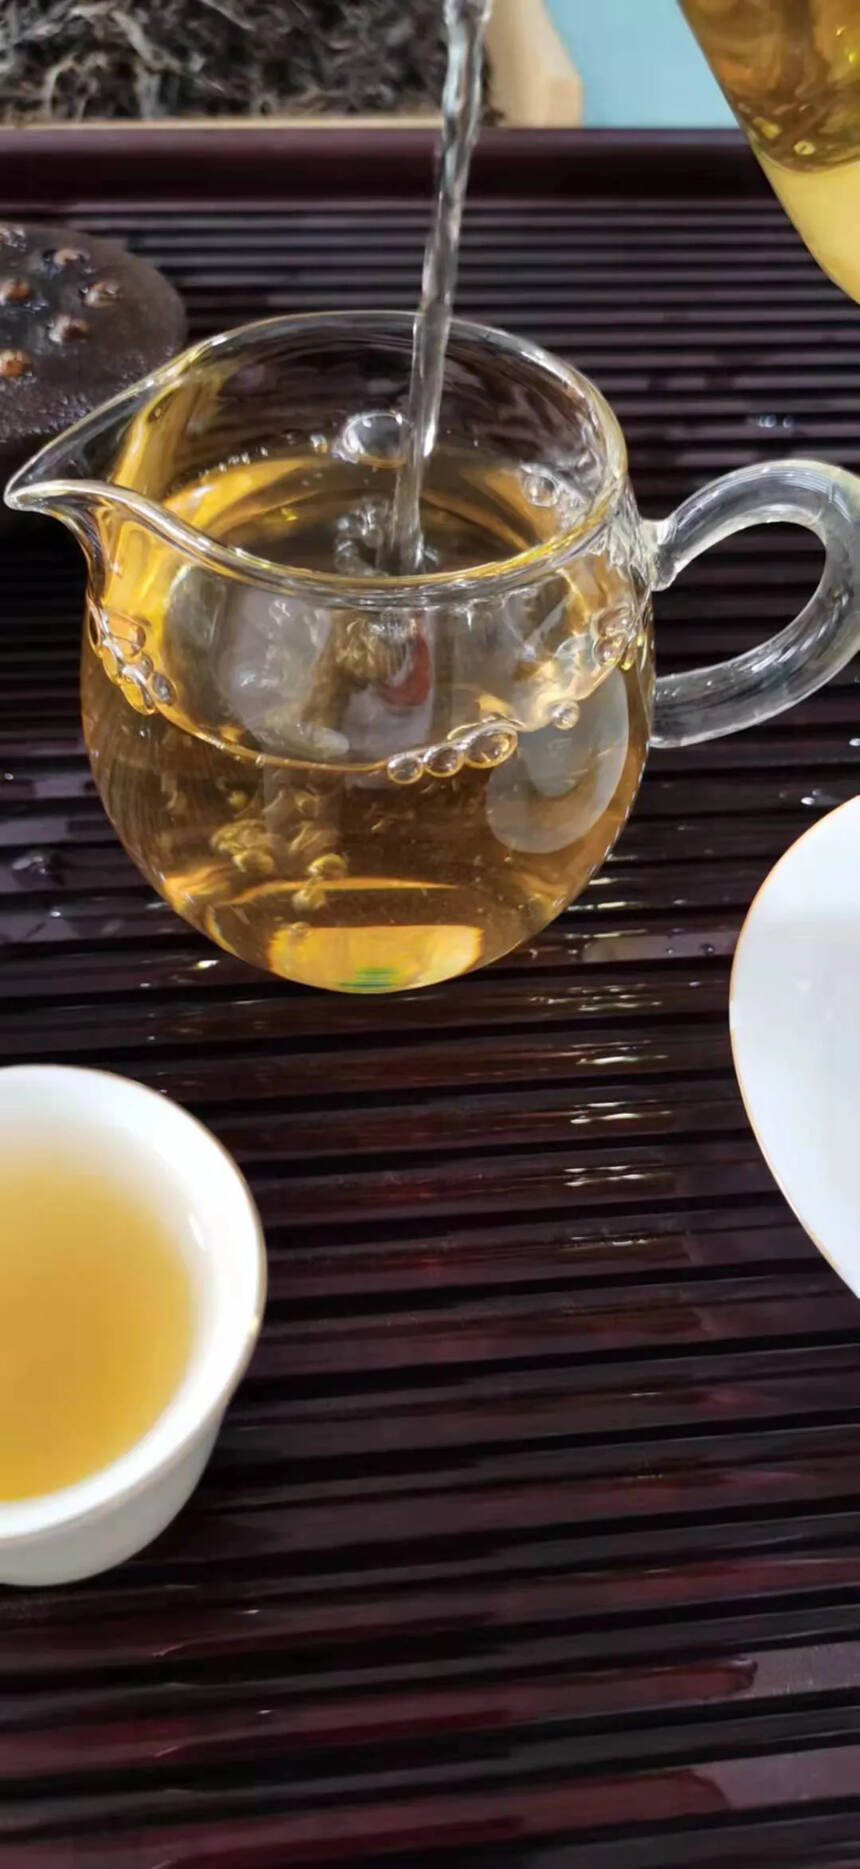 2017年拔玛古树春茶。点赞评论送茶样品试喝。#茶生